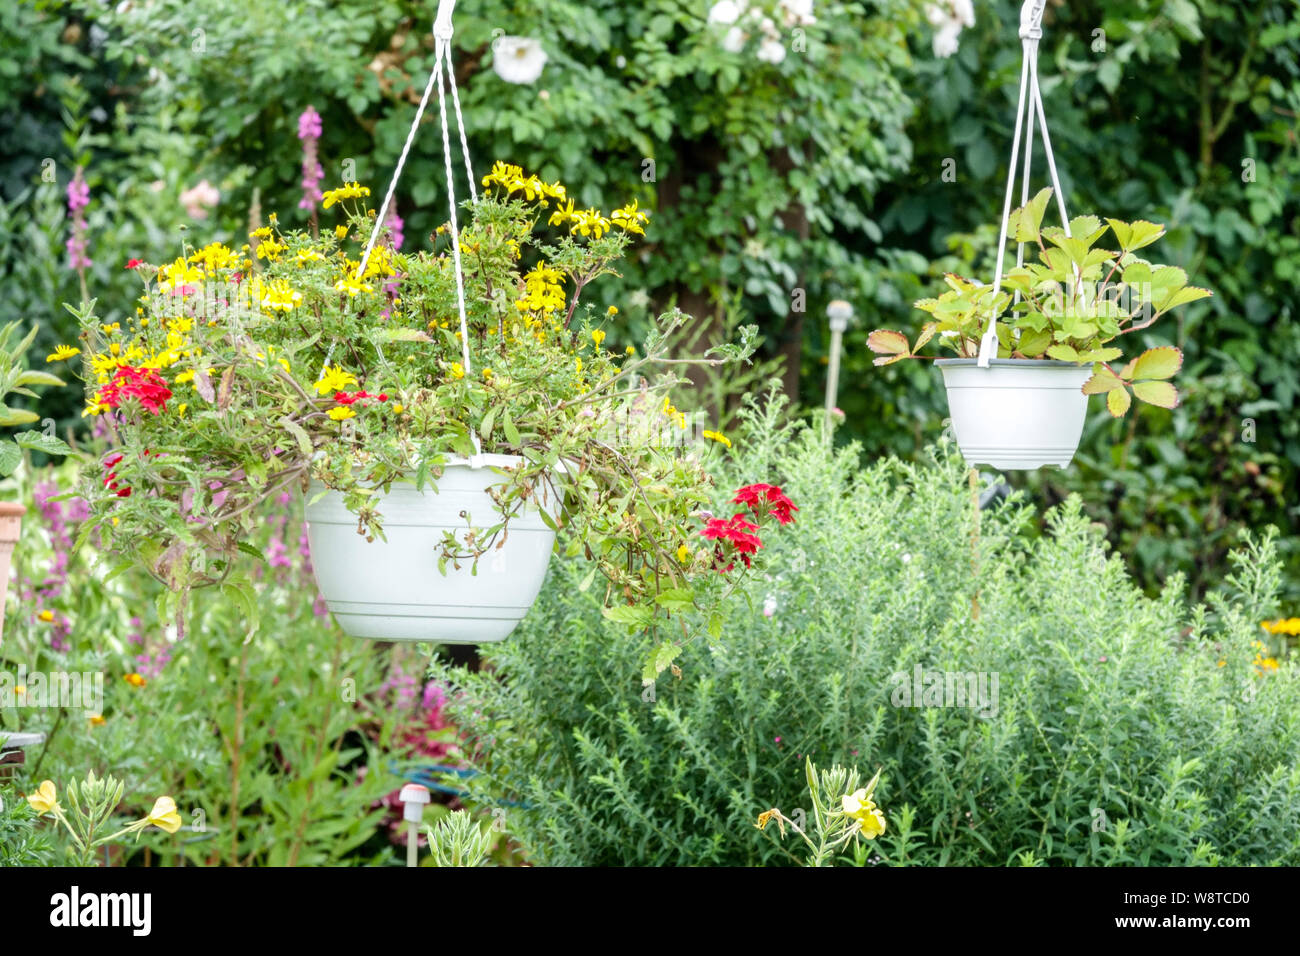 Hängende Töpfe mit bunten Pflanzen im august Gartenblumen Stockfoto